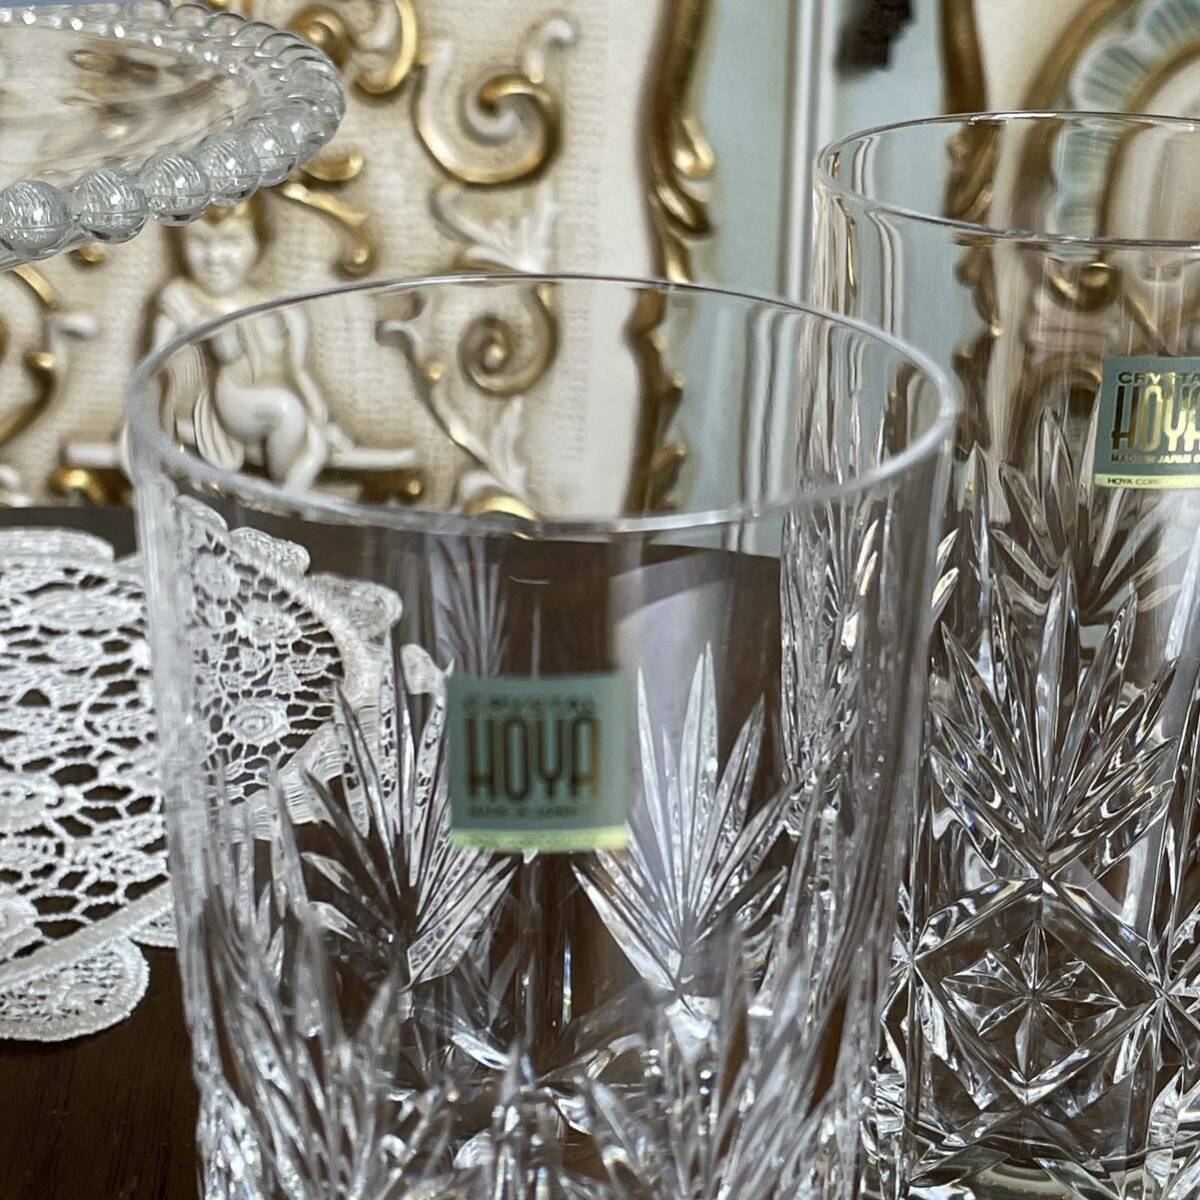 r205 HOYA CRISTALL グラスセット (ロックグラス 3点 タンブラー 2点) キラキラ輝く切り子グラス 重厚感と透明度の高い素敵なグラスの画像7